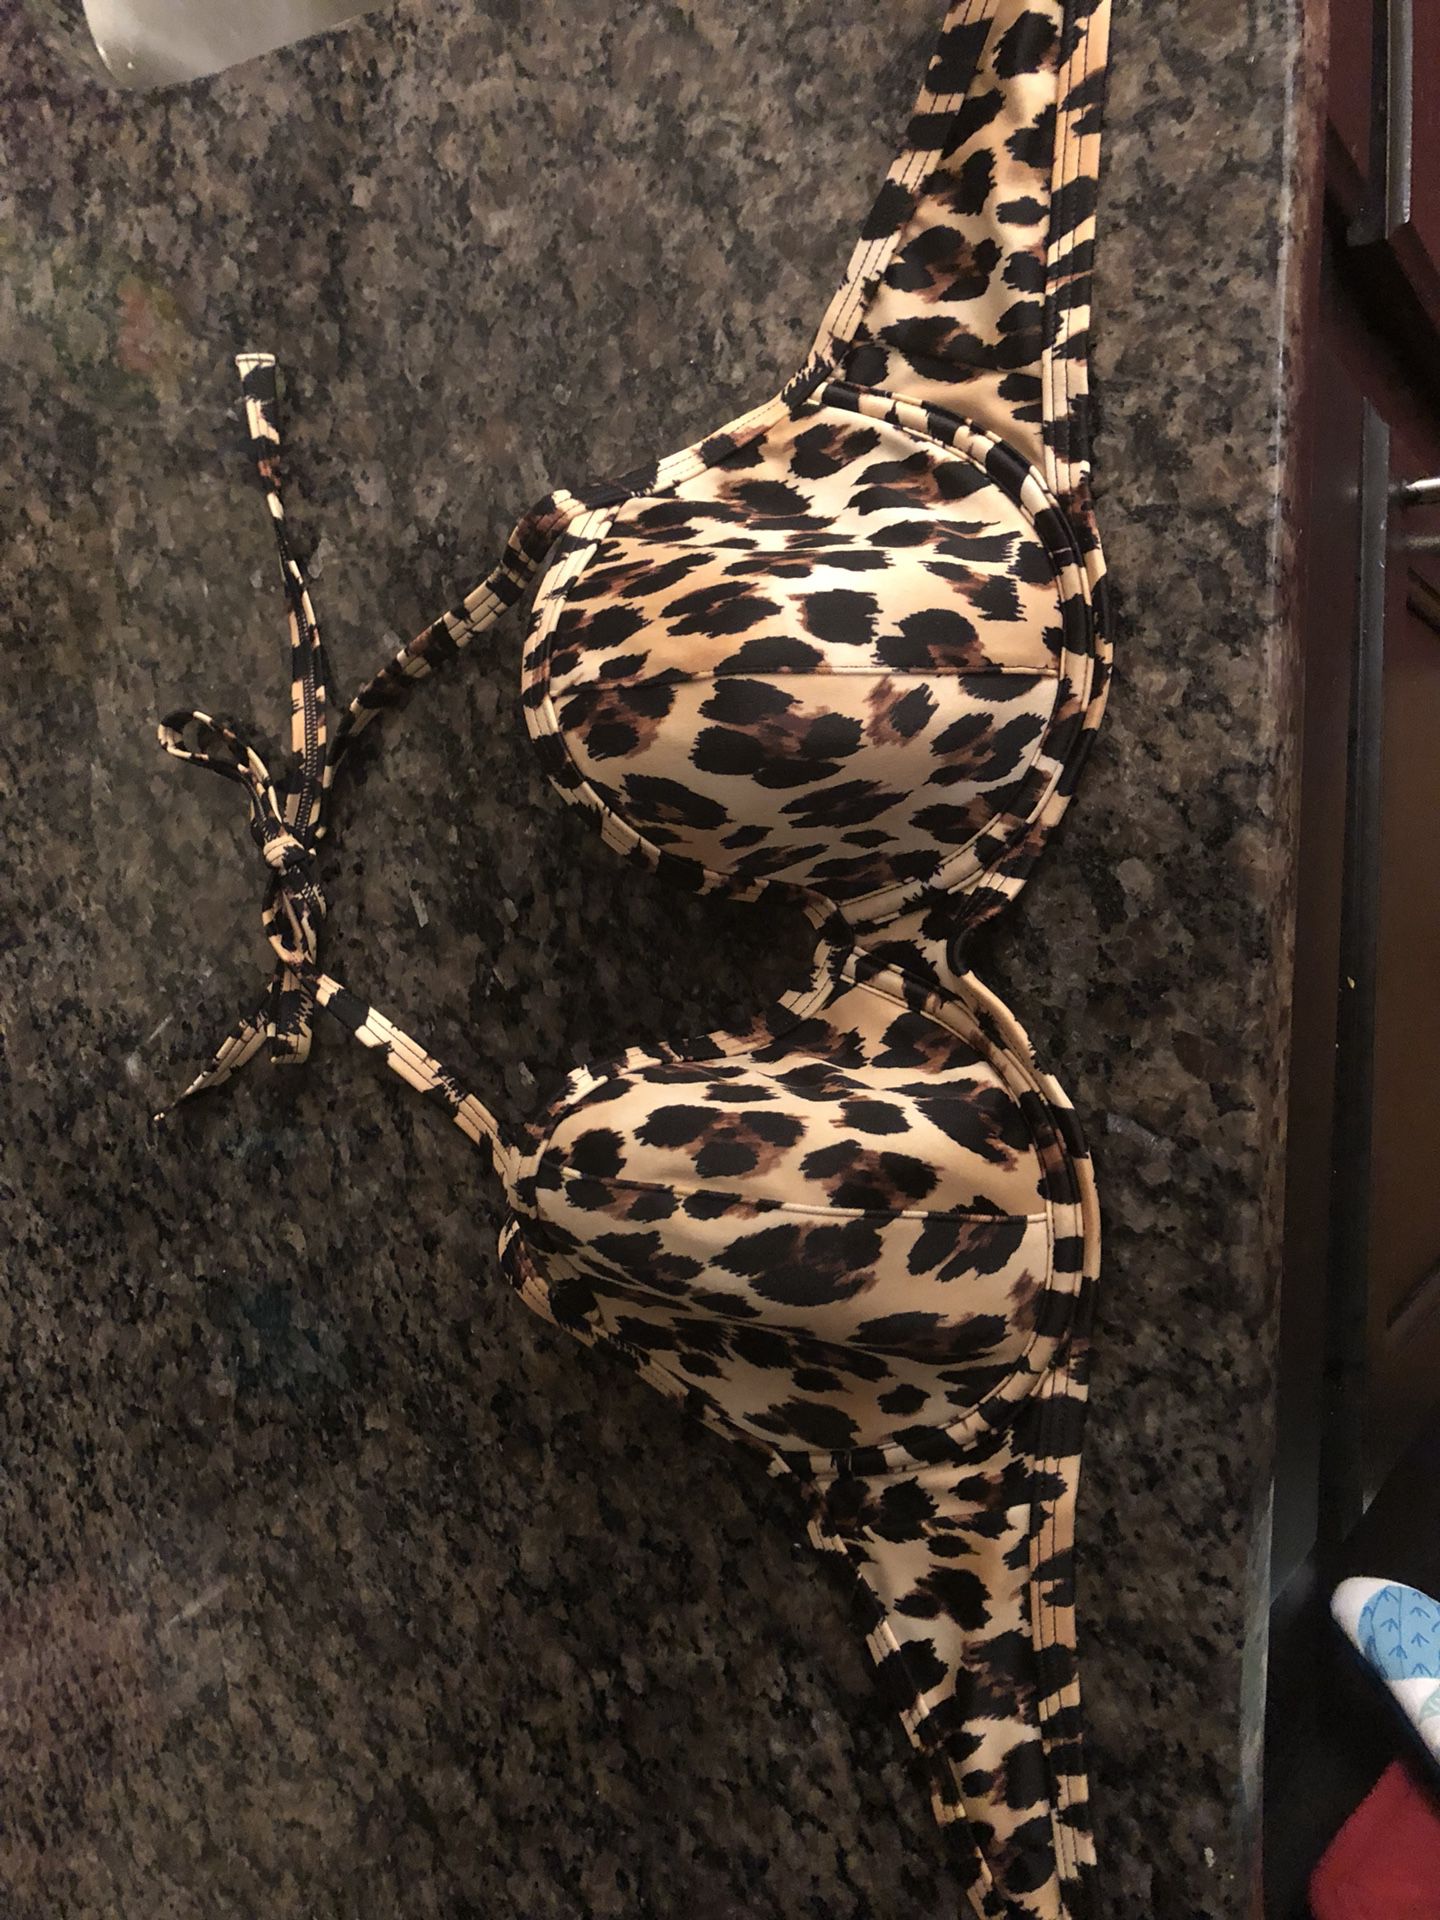 Leopard print halter Victoria secret bathing suit top